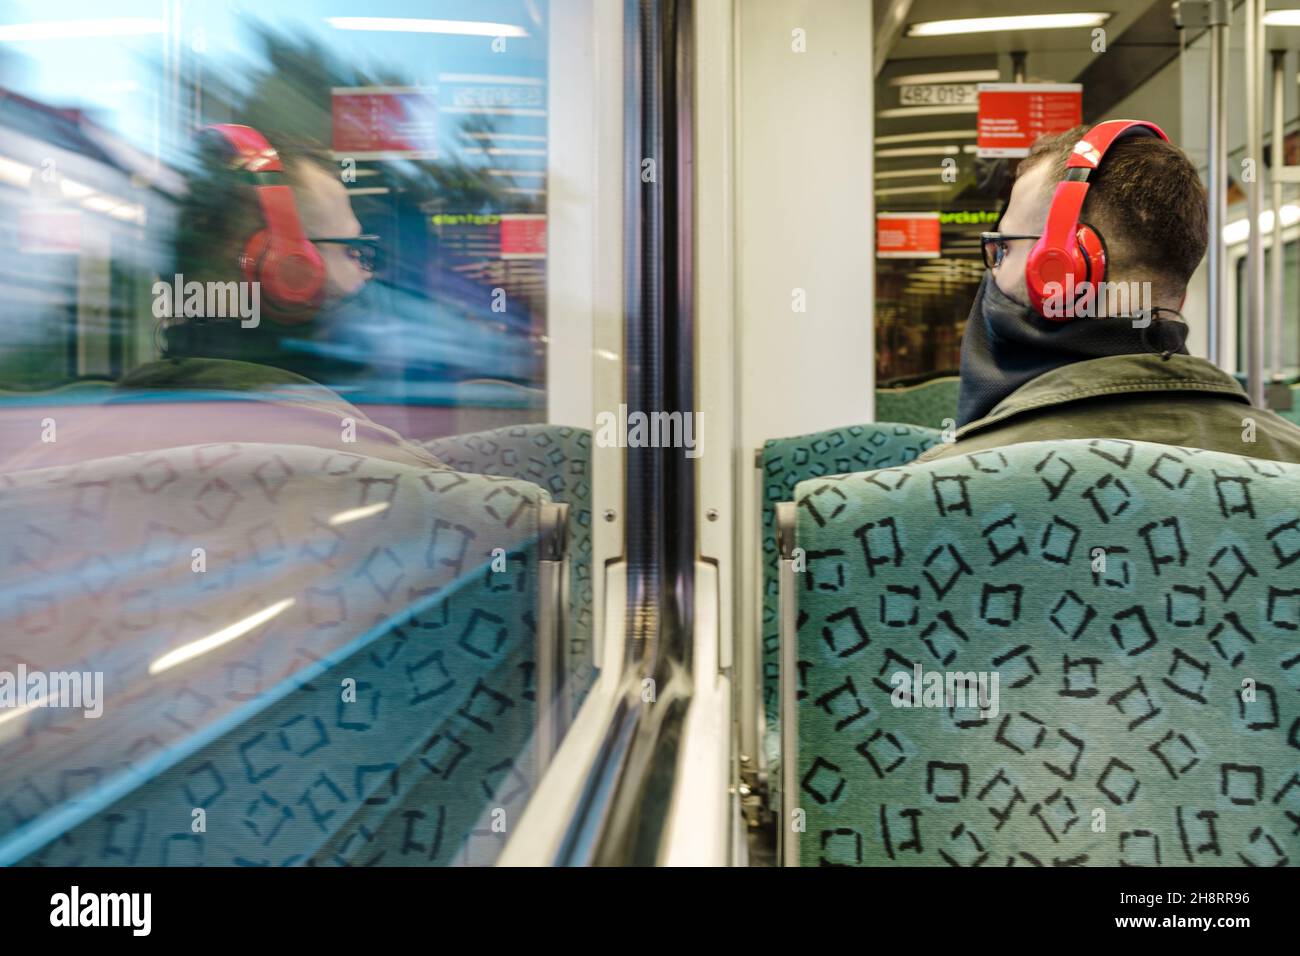 BERLIN, ALLEMAGNE - 23 mai 2020 : un jeune homme dans le train Sbahn Berlin écoute de la musique avec son casque rouge et porte un masque Banque D'Images